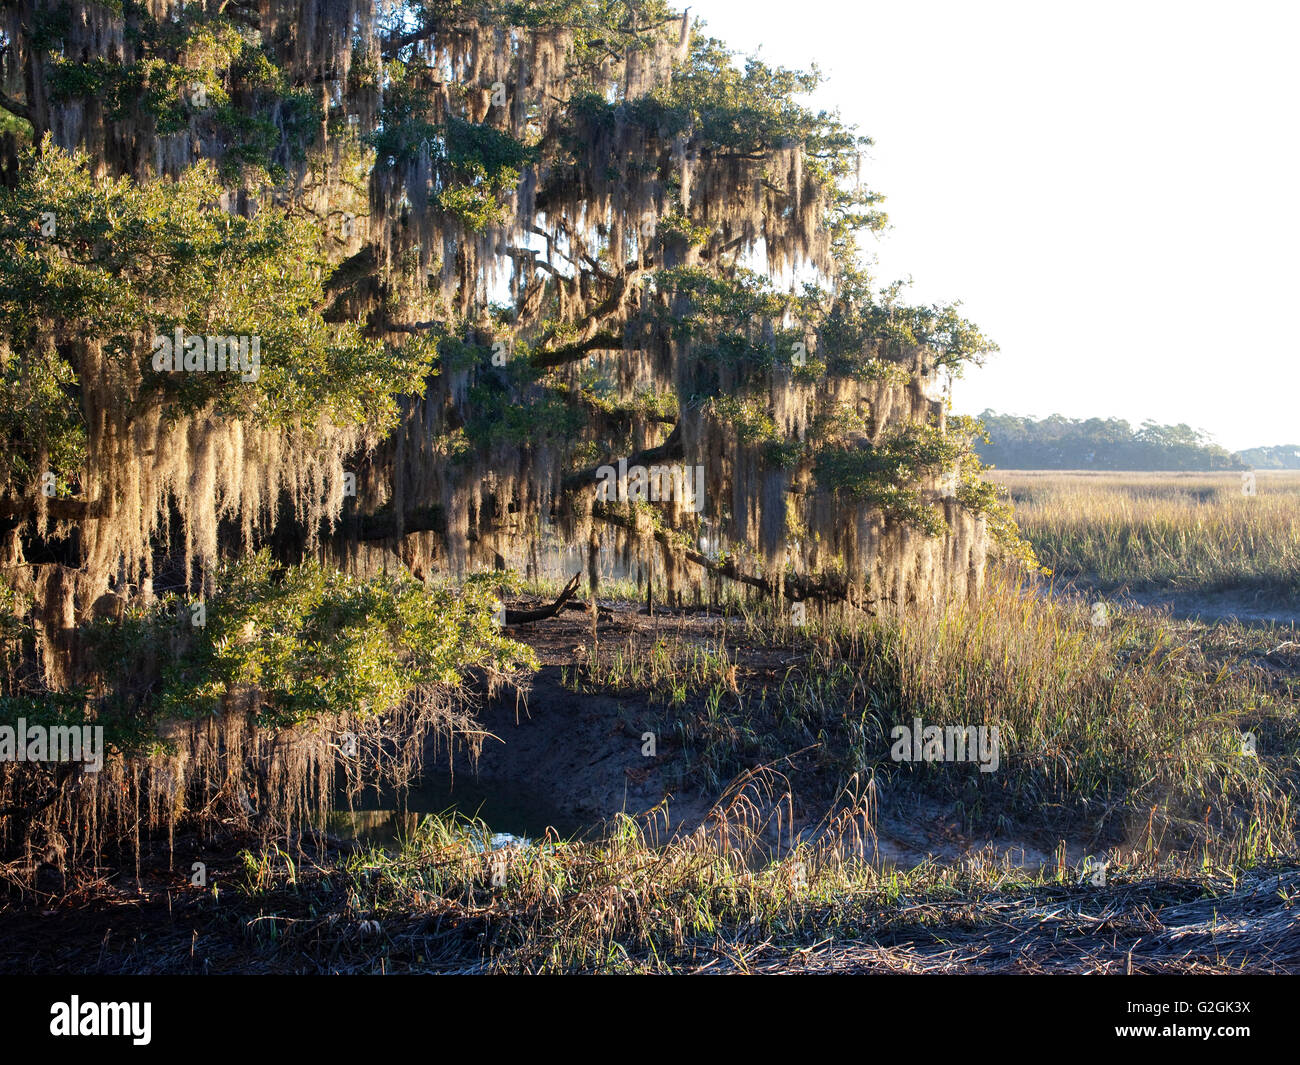 South Carolina Landschaft mit spanischem Moos, Phaseneiche bei Ebbe auf Salz-Sumpf Stockfoto